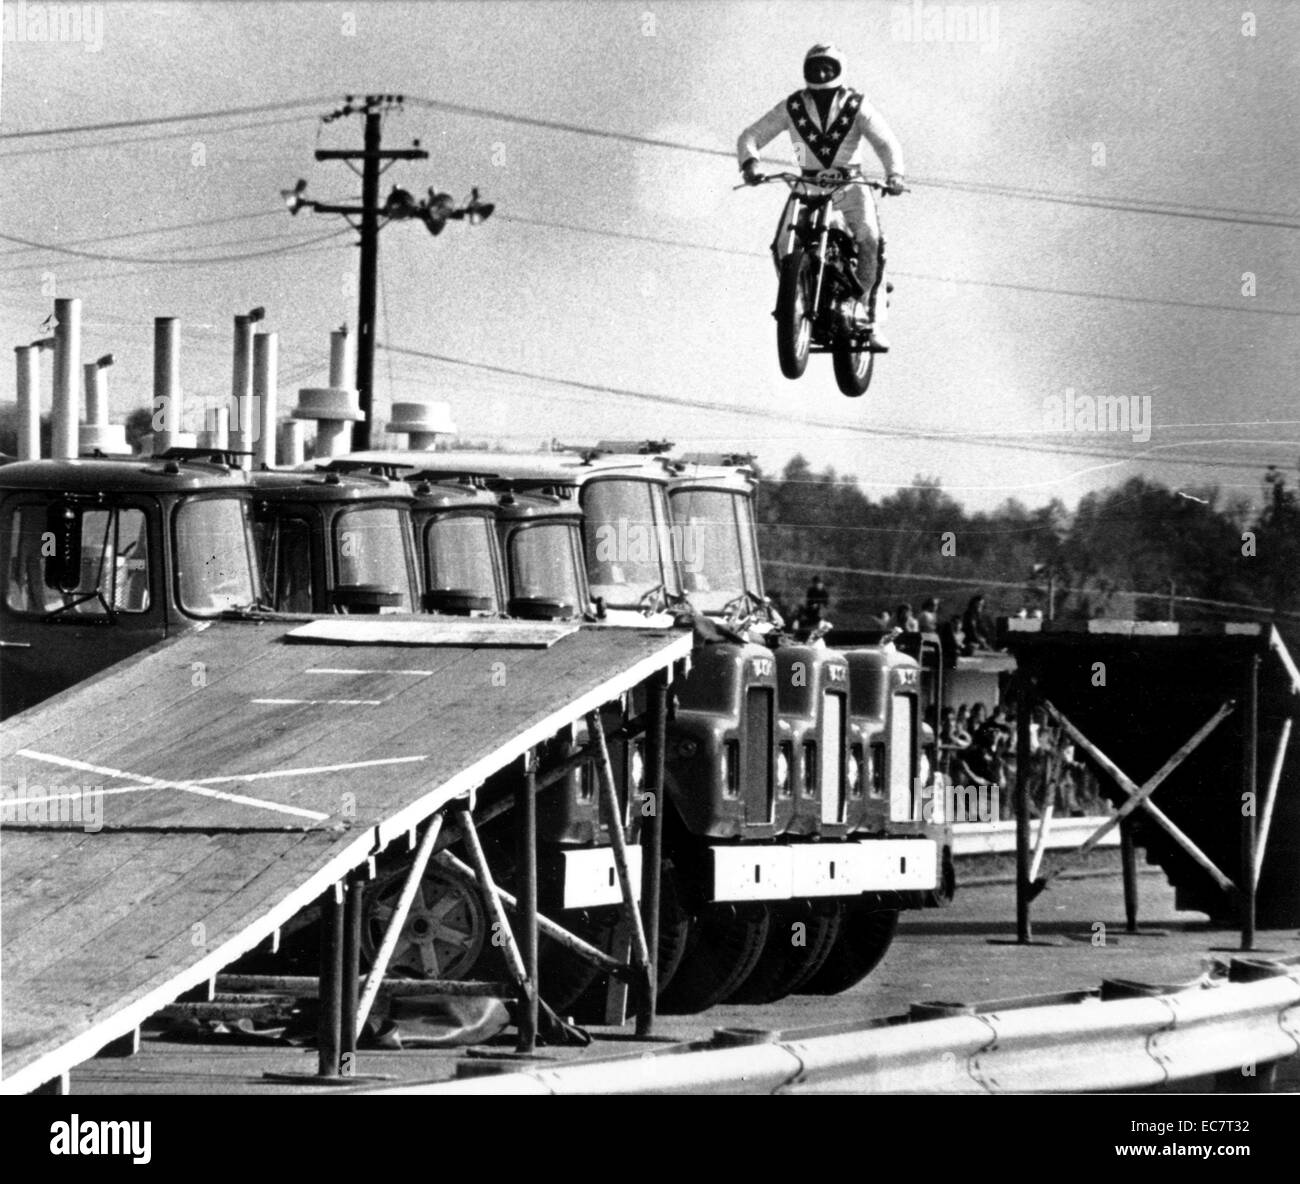 Evel Knievel war eine Amerikanische Draufgänger, Maler, Entertainer, und internationale Symbol. In seiner Karriere hat er über 75 Rampe versucht-zu-Rampe Motorrad springt zwischen 1965 und 1980 und 1974, einen ausgefallenen springen über Snake River Canyon in der Skycycle ähnelt X-2, eine dampfbetriebene Rakete. Die über 433 Knochenbrüche erlitt er während seiner Karriere brachte ihm einen Eintrag ins Guinness Buch der Rekorde als die Überlebenden von Ost Knochen gebrochen in einer Lebenszeit' Stockfoto